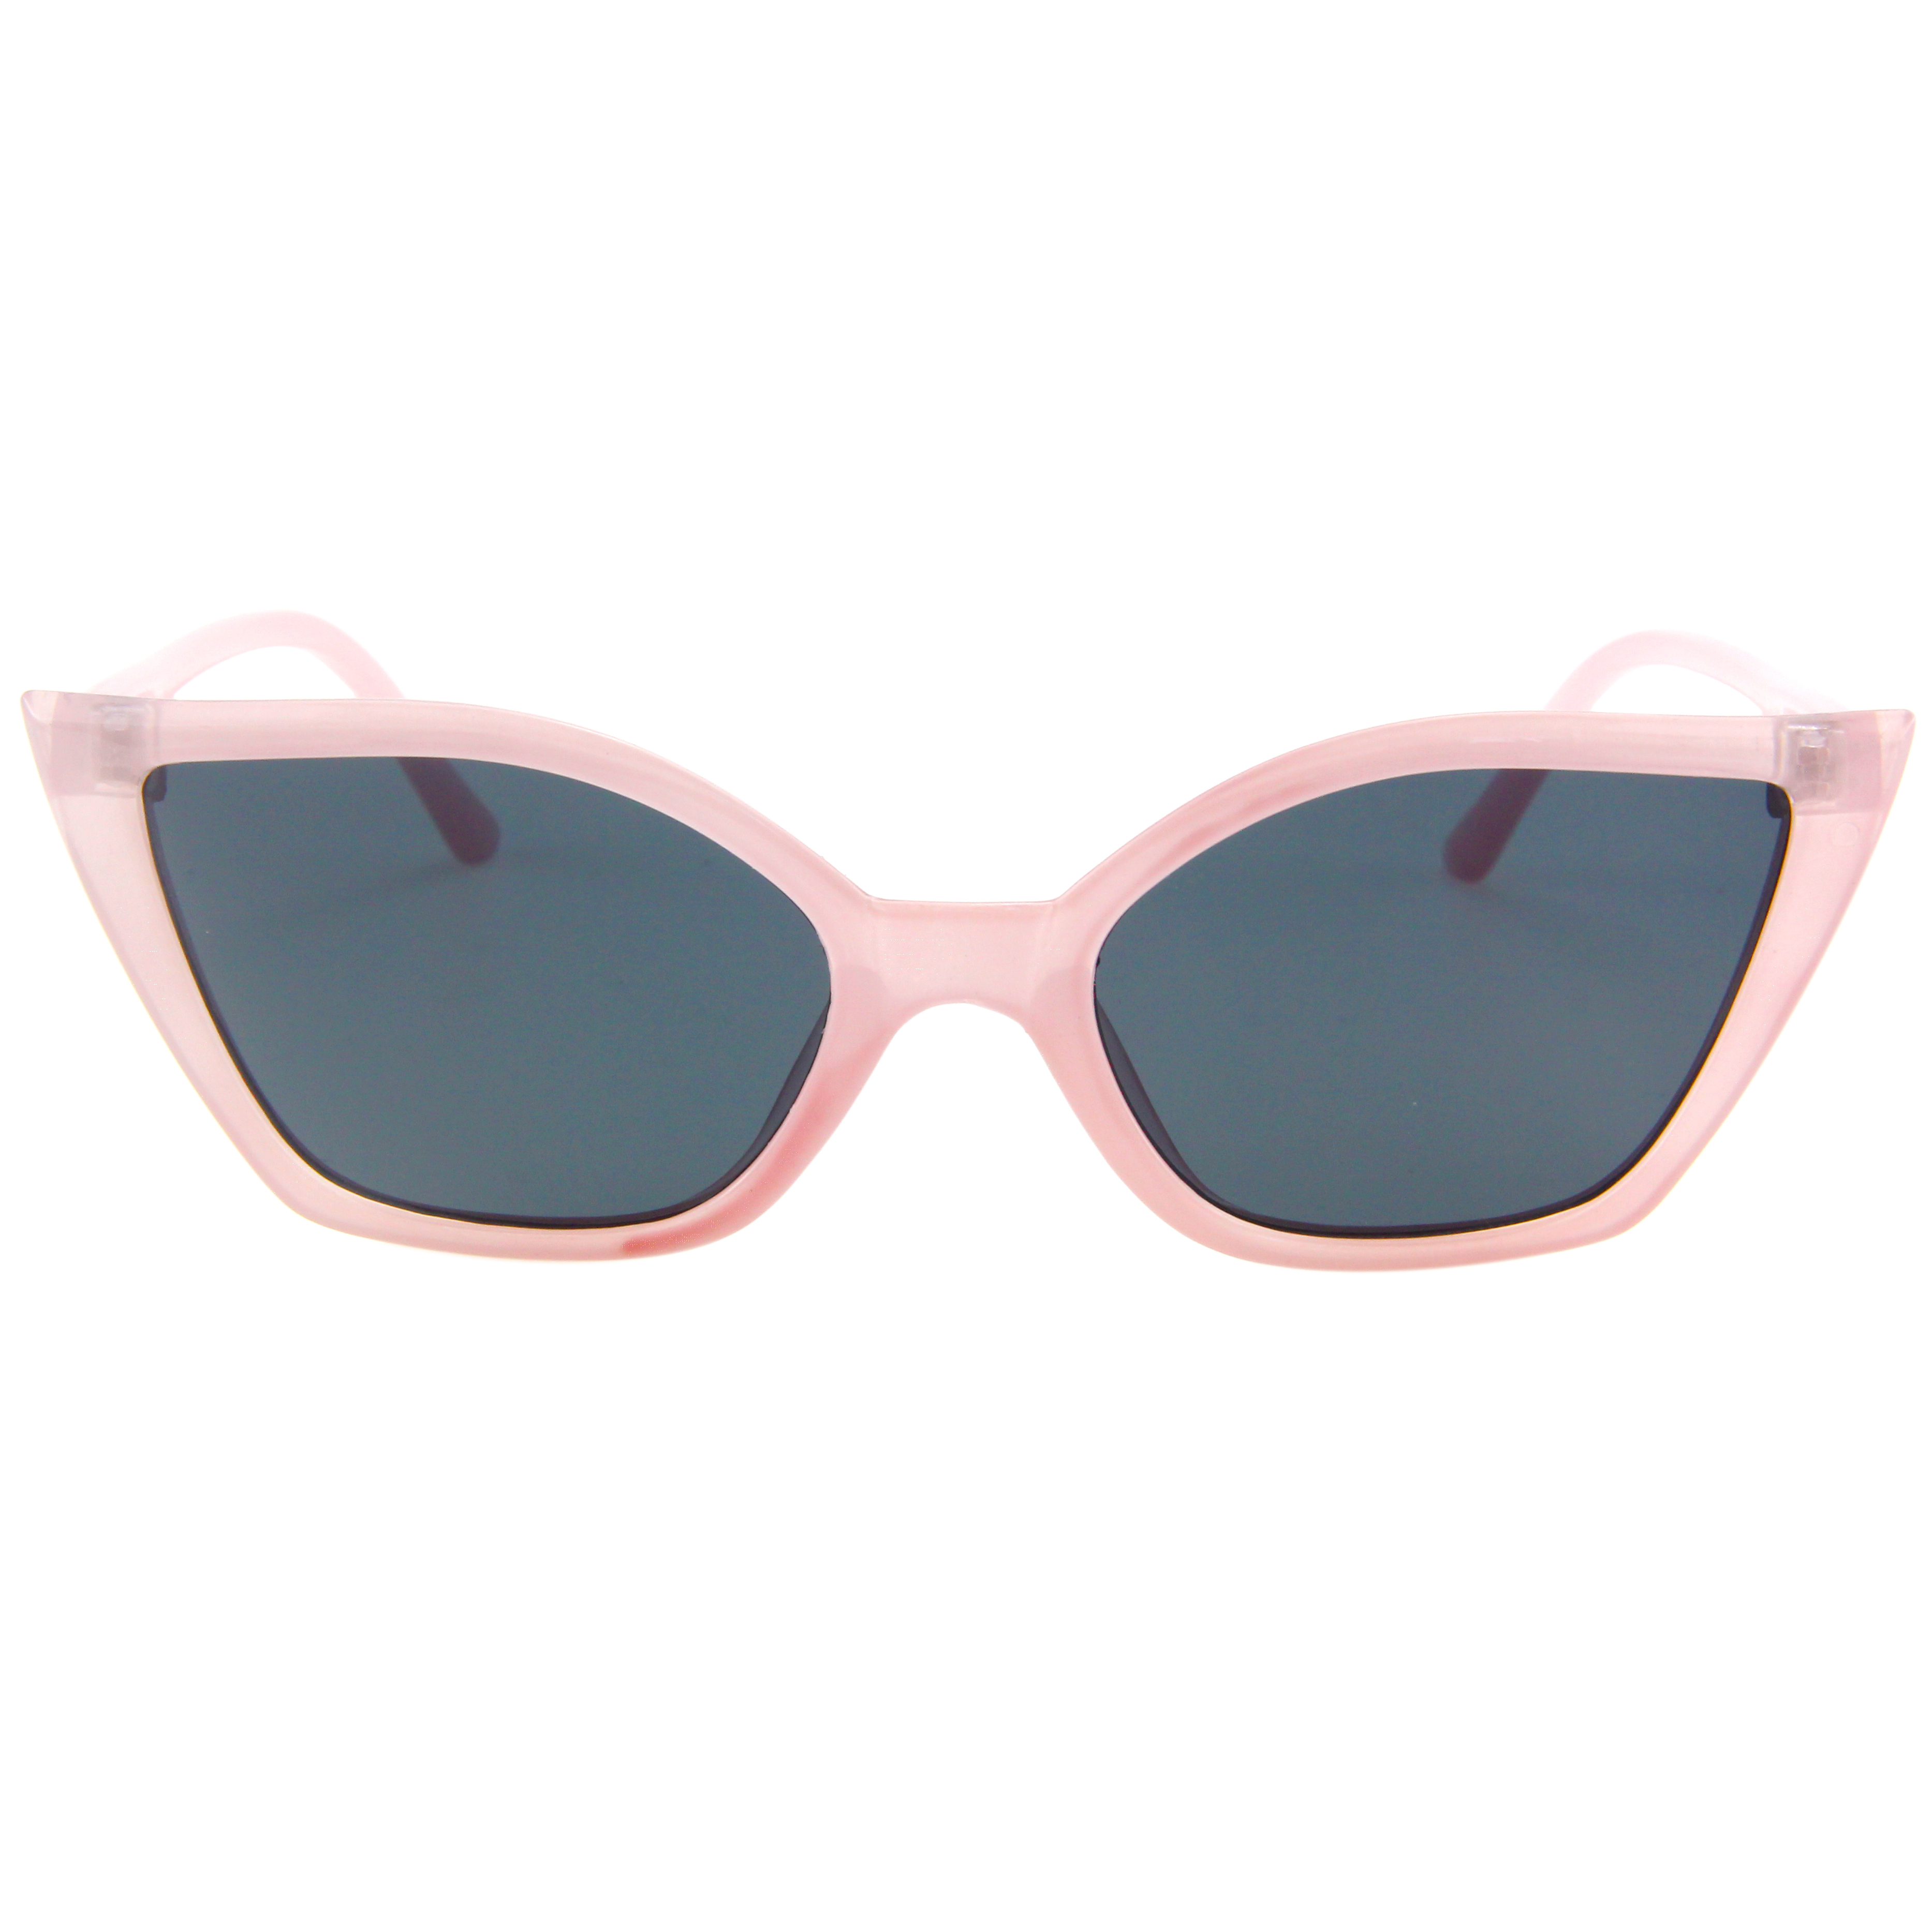 Eugenia Color Color Color Hot Polarized Sunglasses Mujeres de lujo Cateye Catedye Gafas de sol para moda